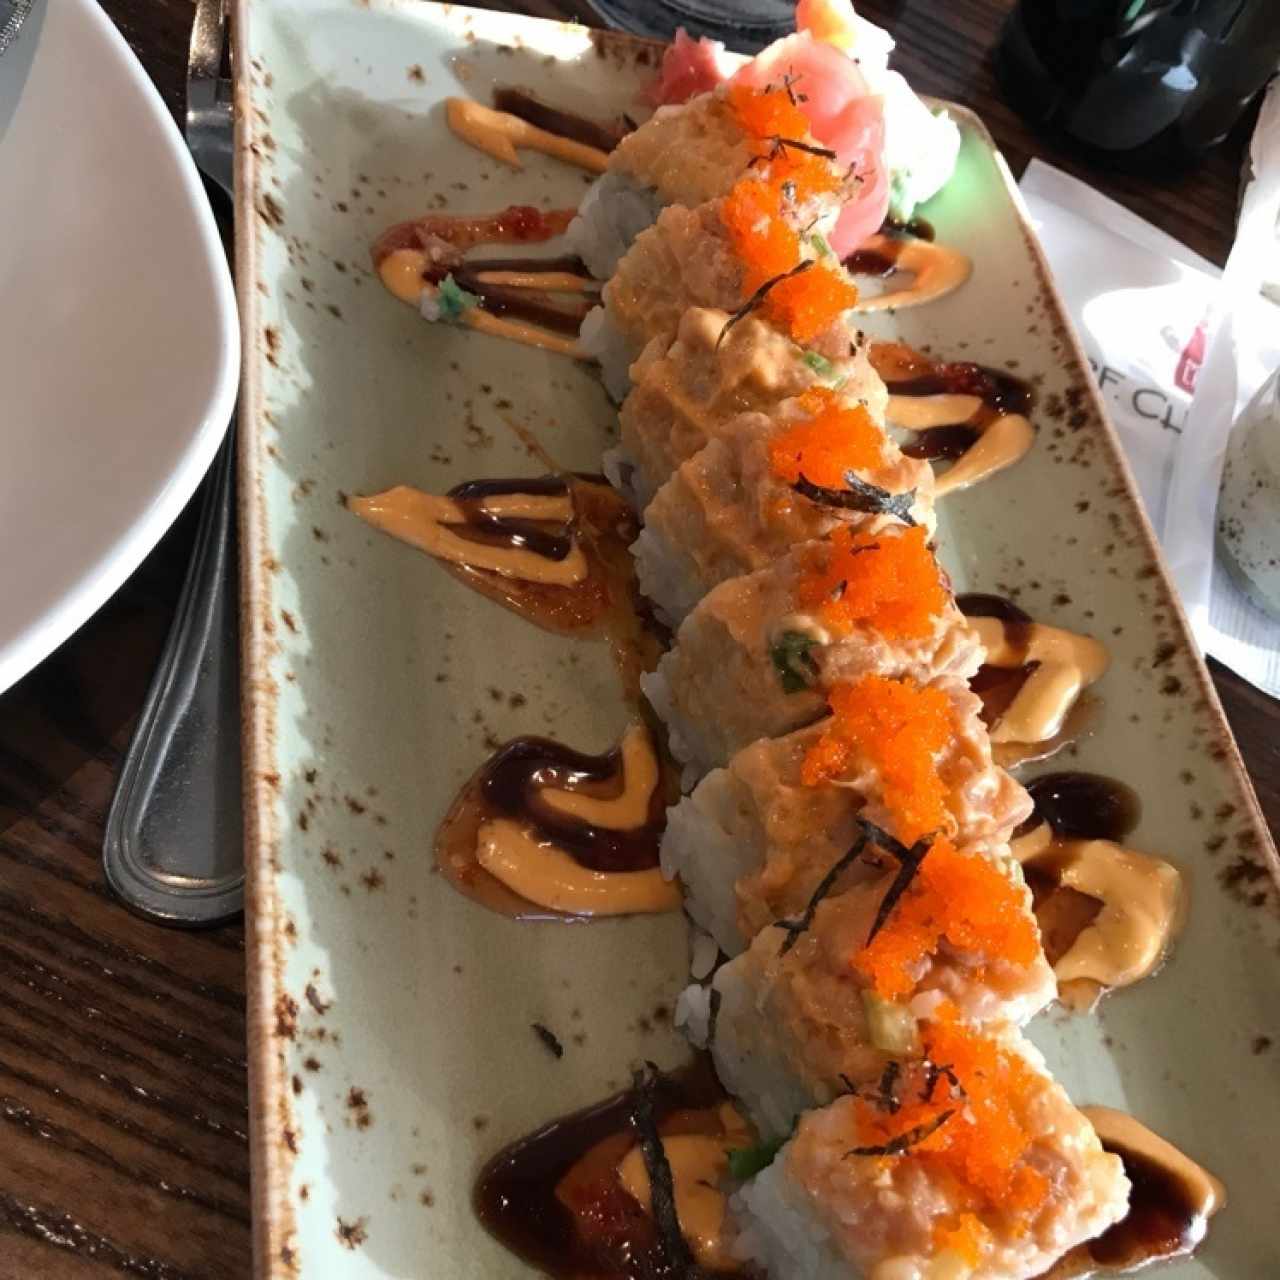 Pf changs sushi